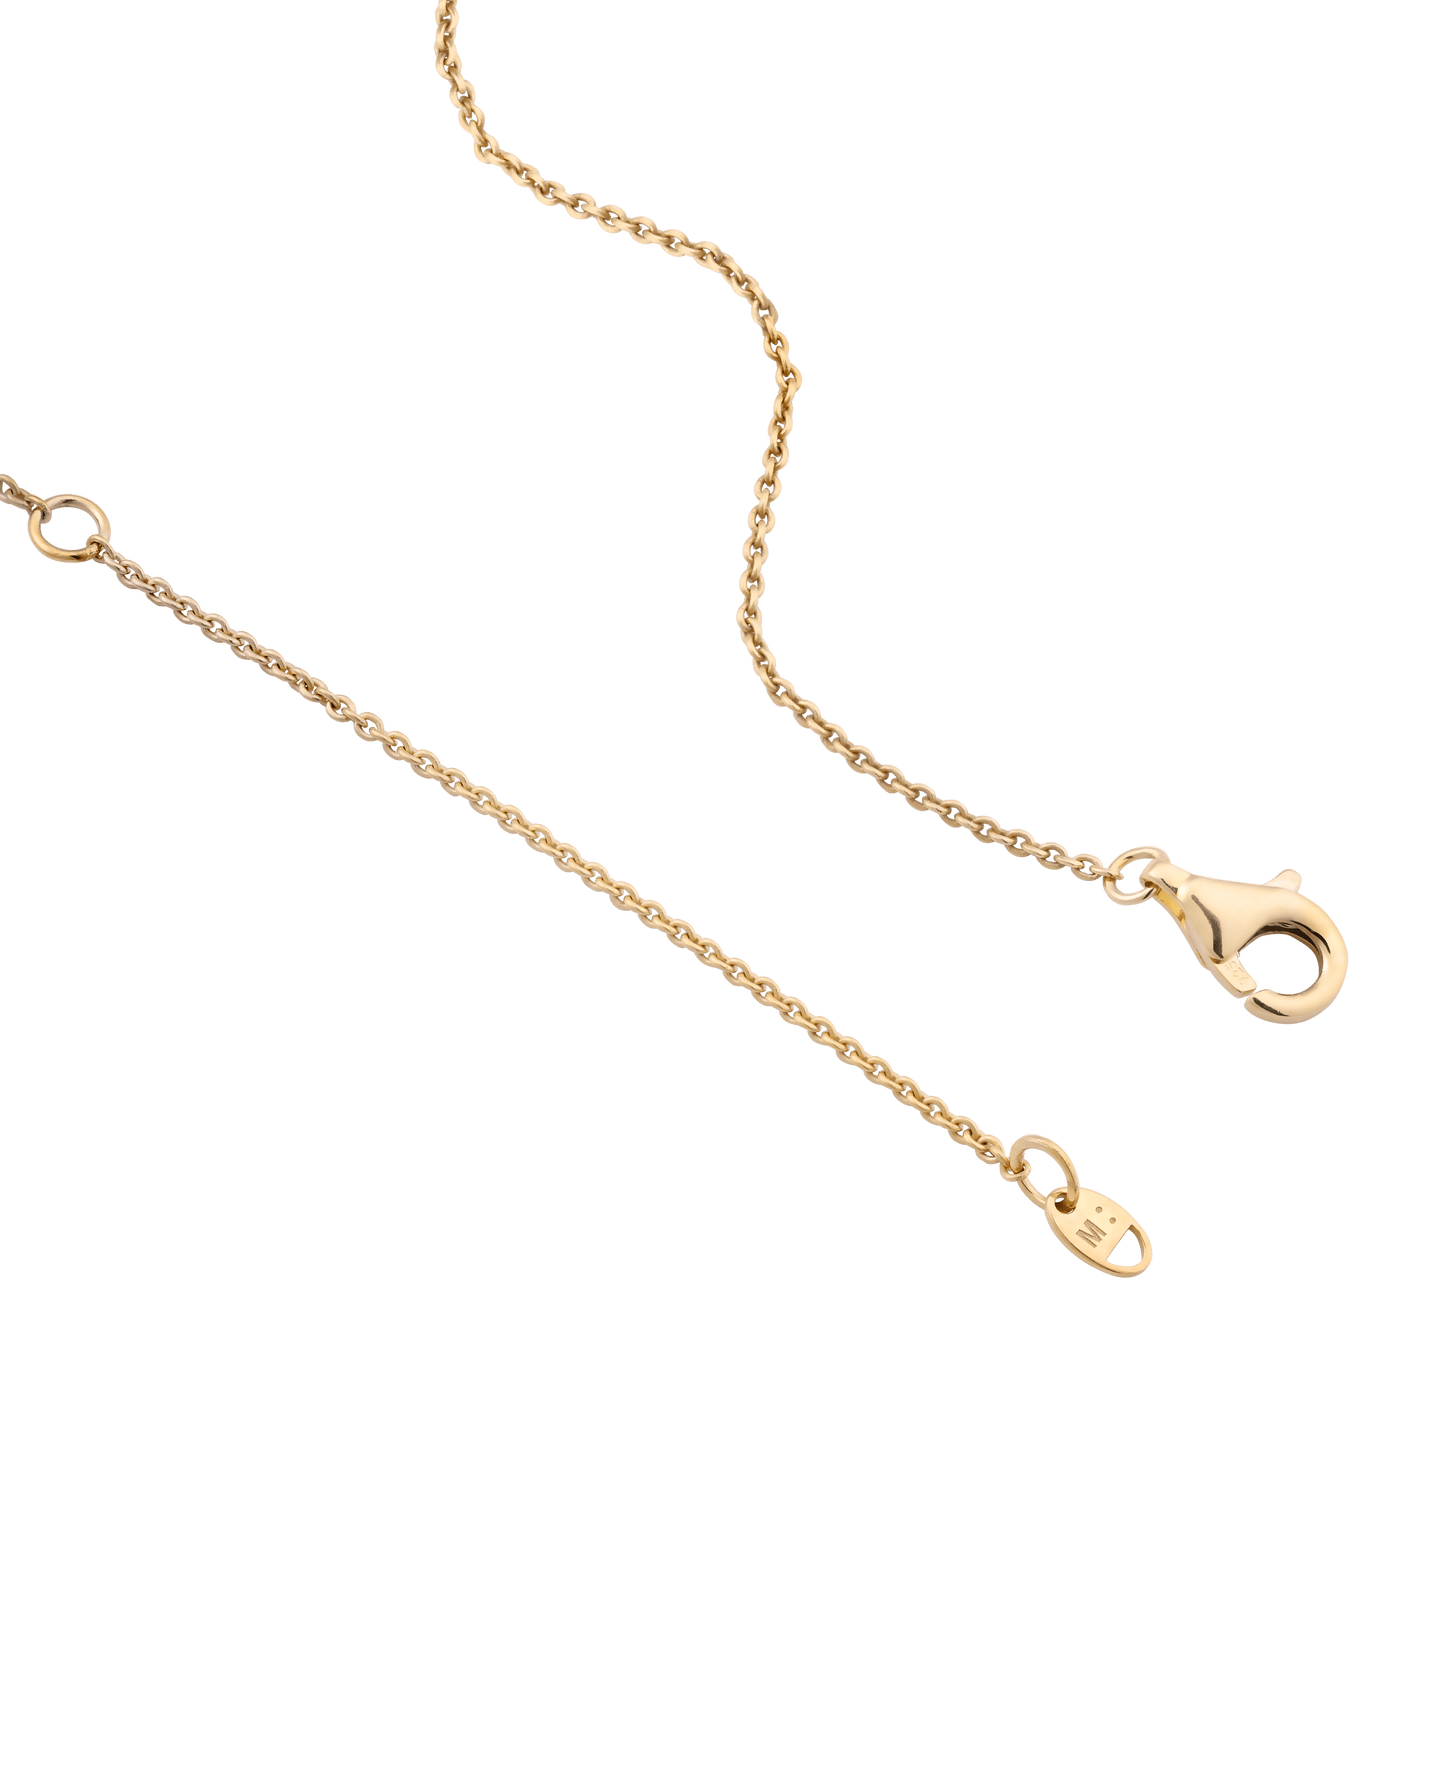 Birthstone Taglet Necklace - 18K Gold Vermeil Necklaces magal-dev 